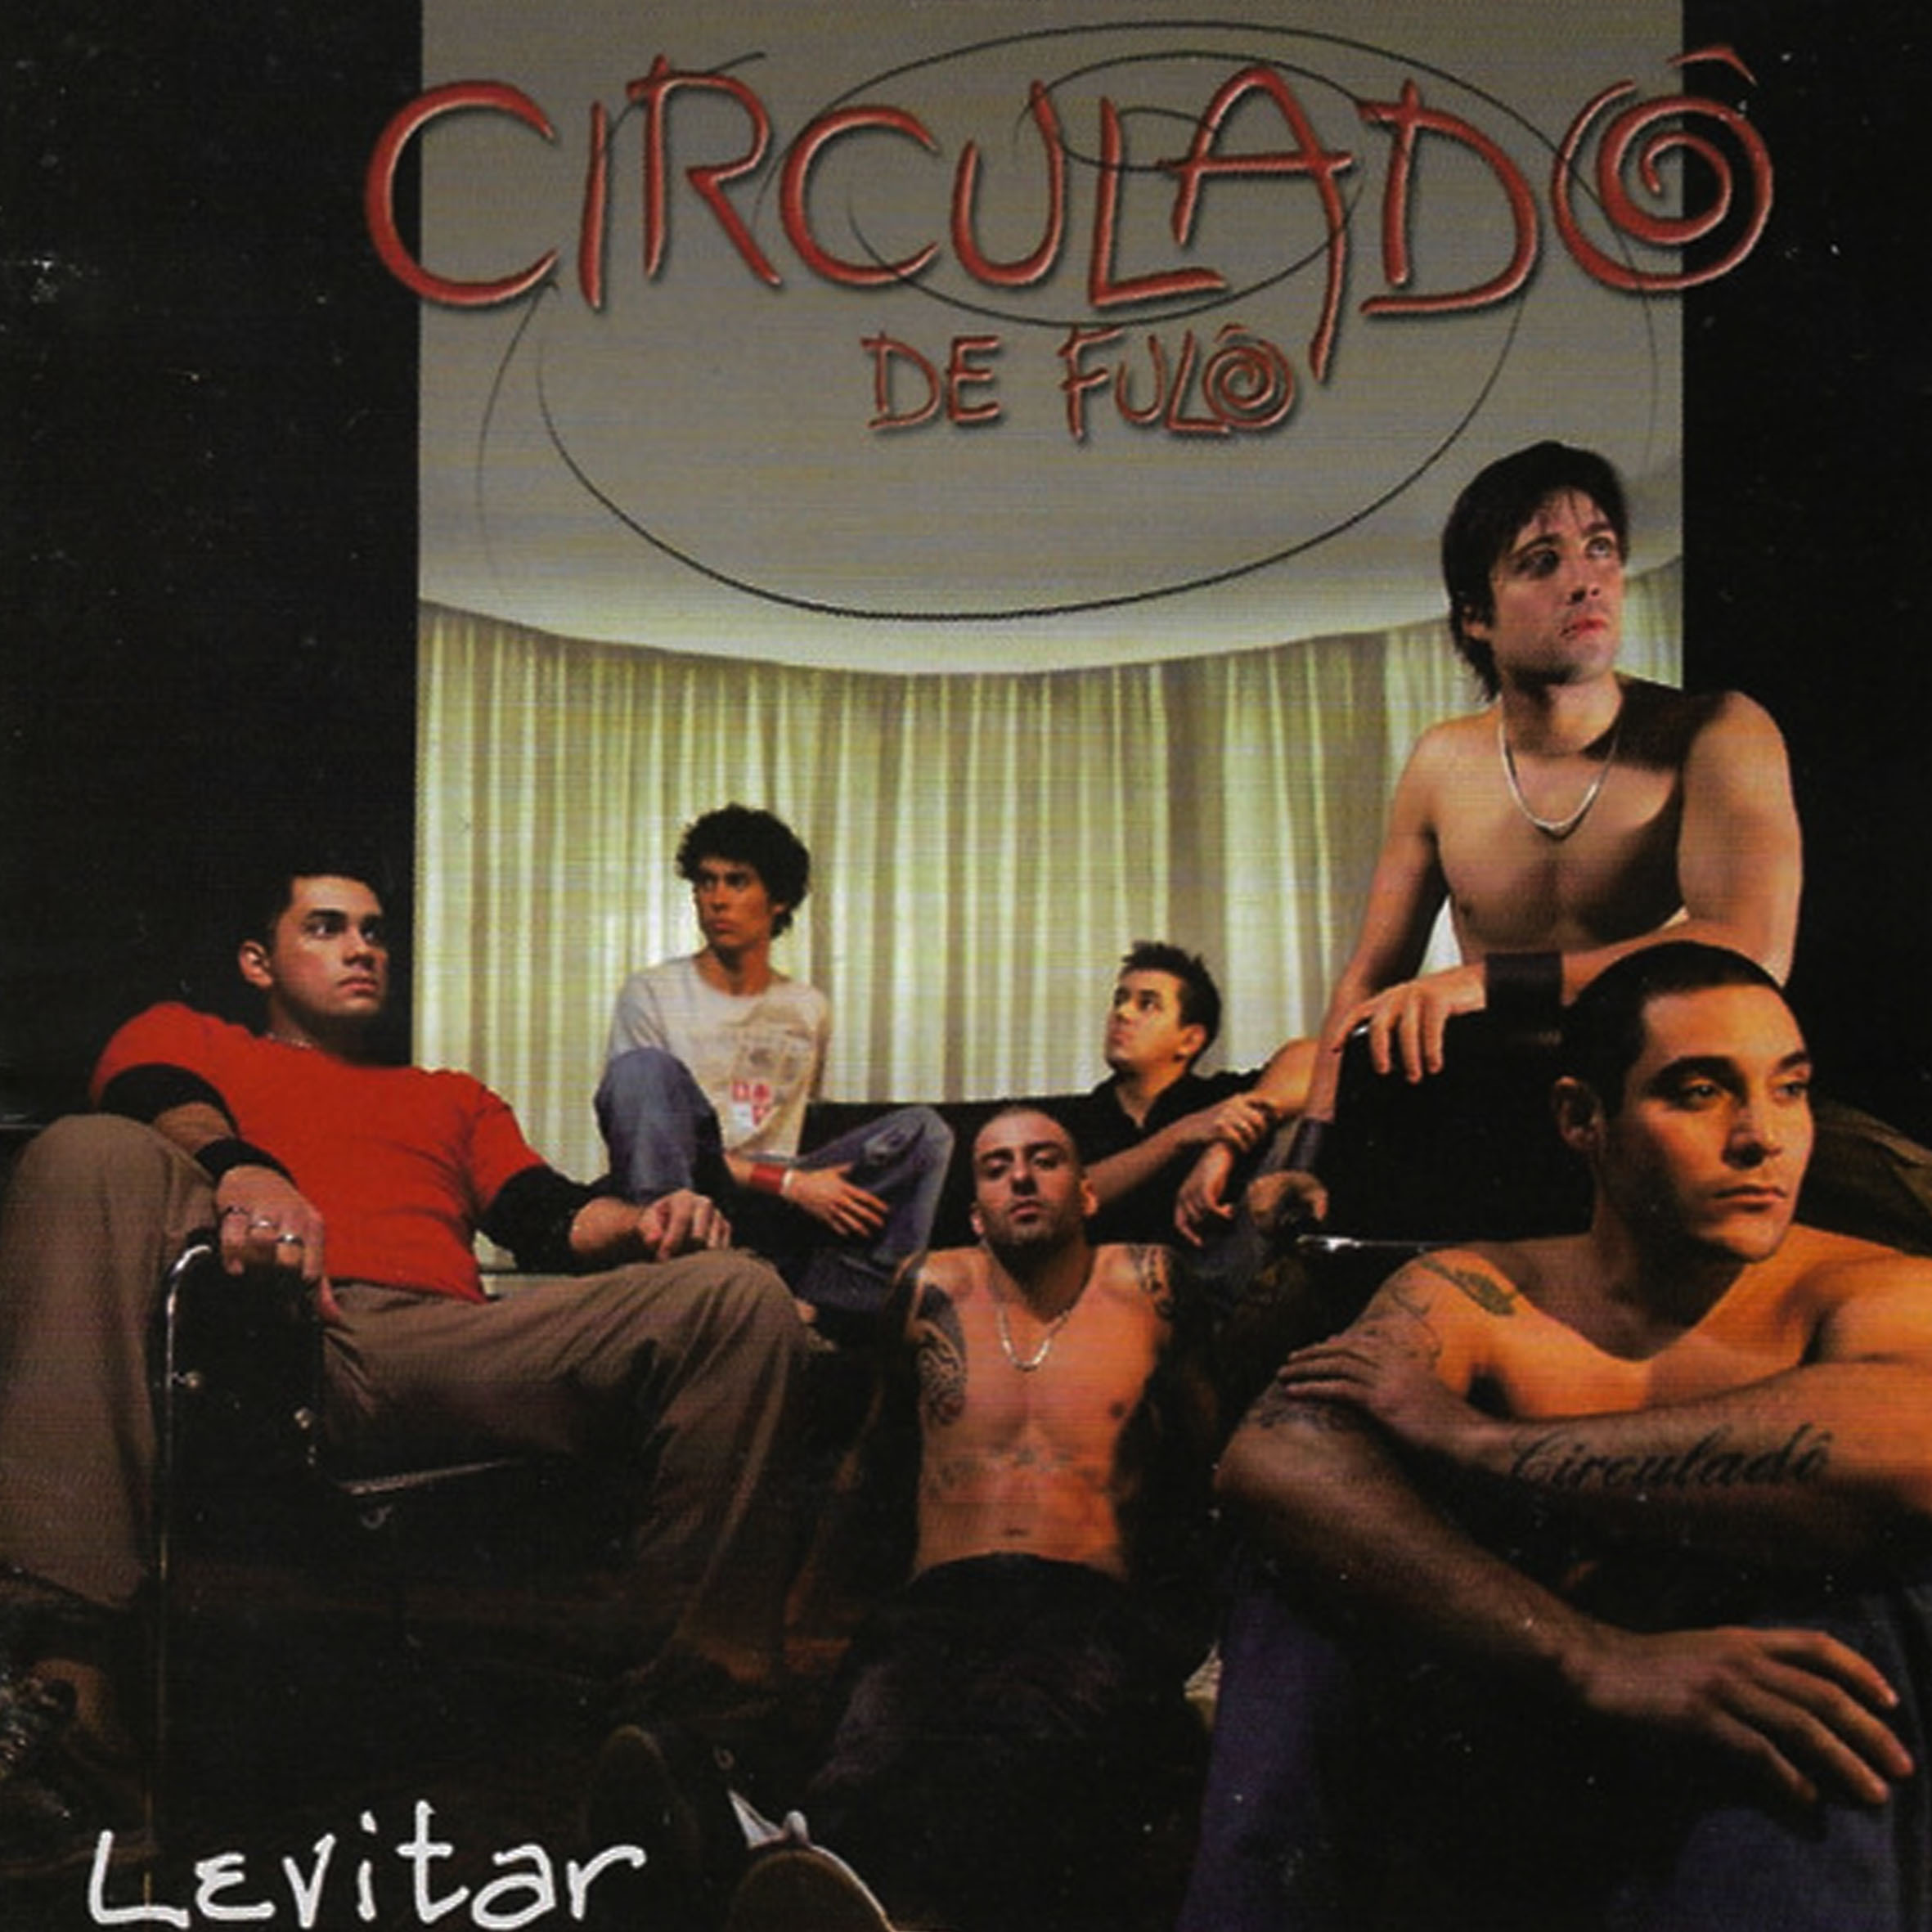 CD - Circulado De Fulo - Levitar